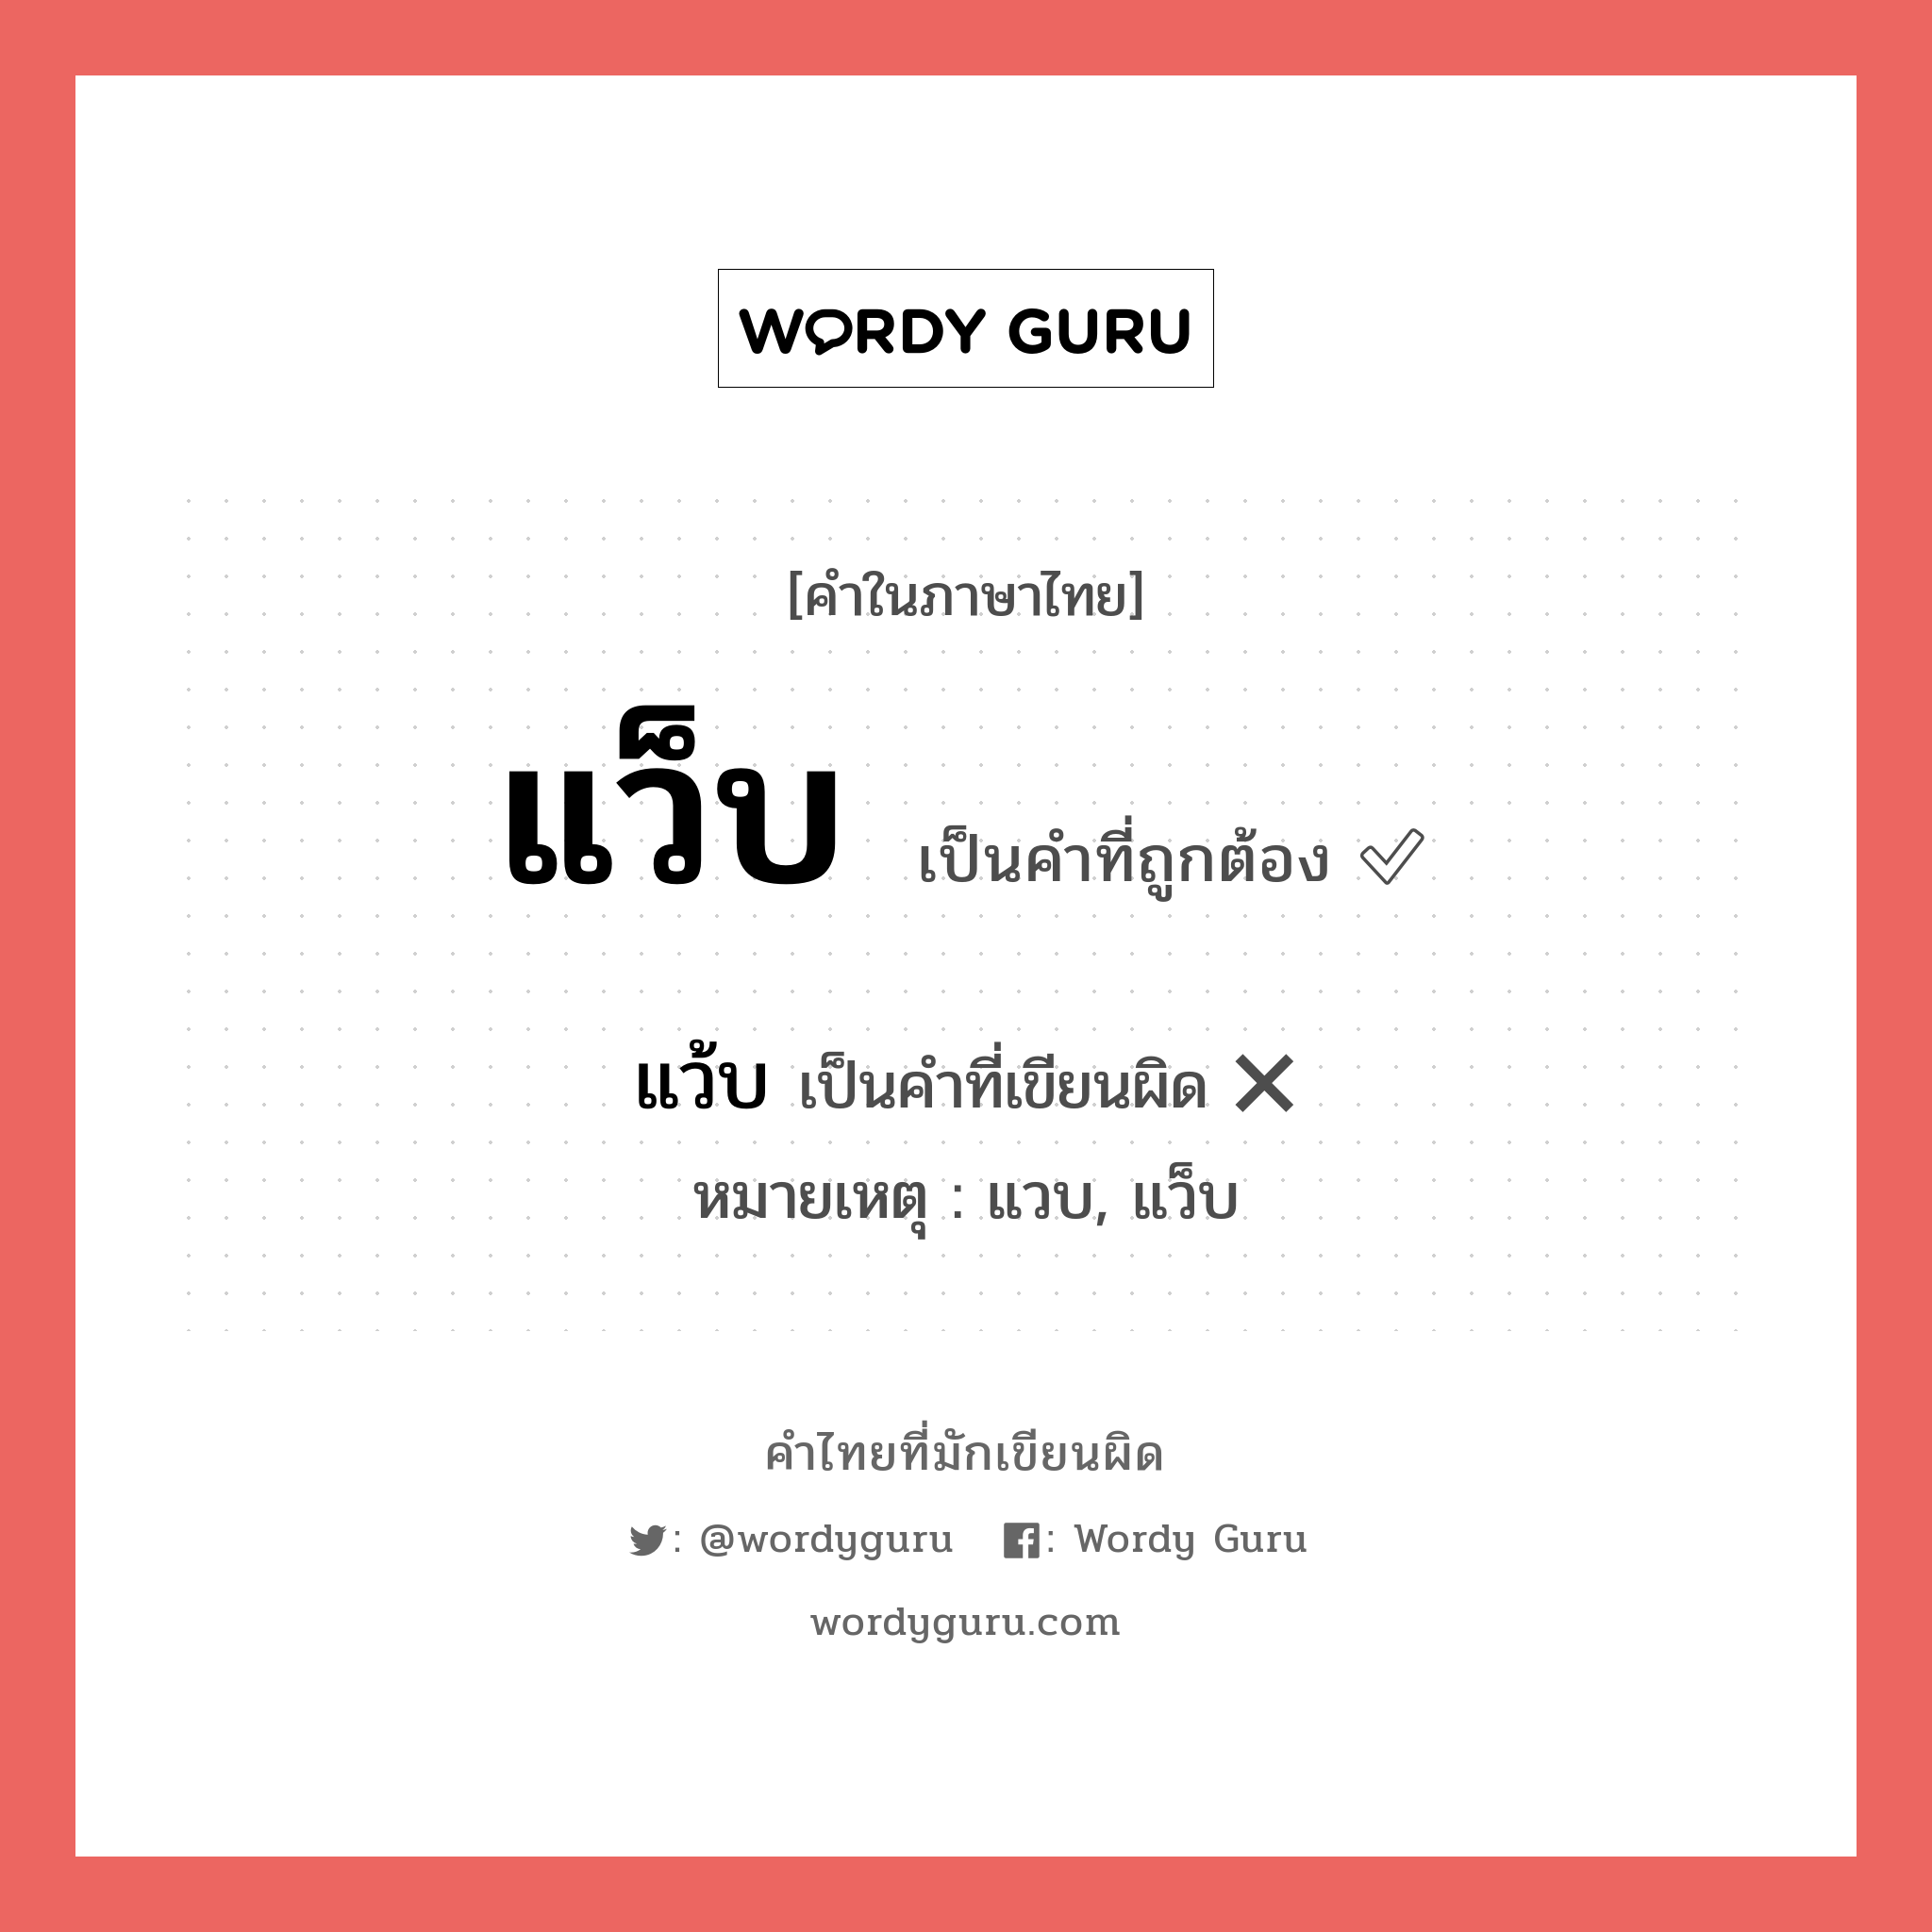 แว็บ หรือ แว๊บ เขียนยังไง? คำไหนเขียนถูก?, คำในภาษาไทยที่มักเขียนผิด แว็บ คำที่ผิด ❌ แว้บ หมายเหตุ แวบ, แว็บ